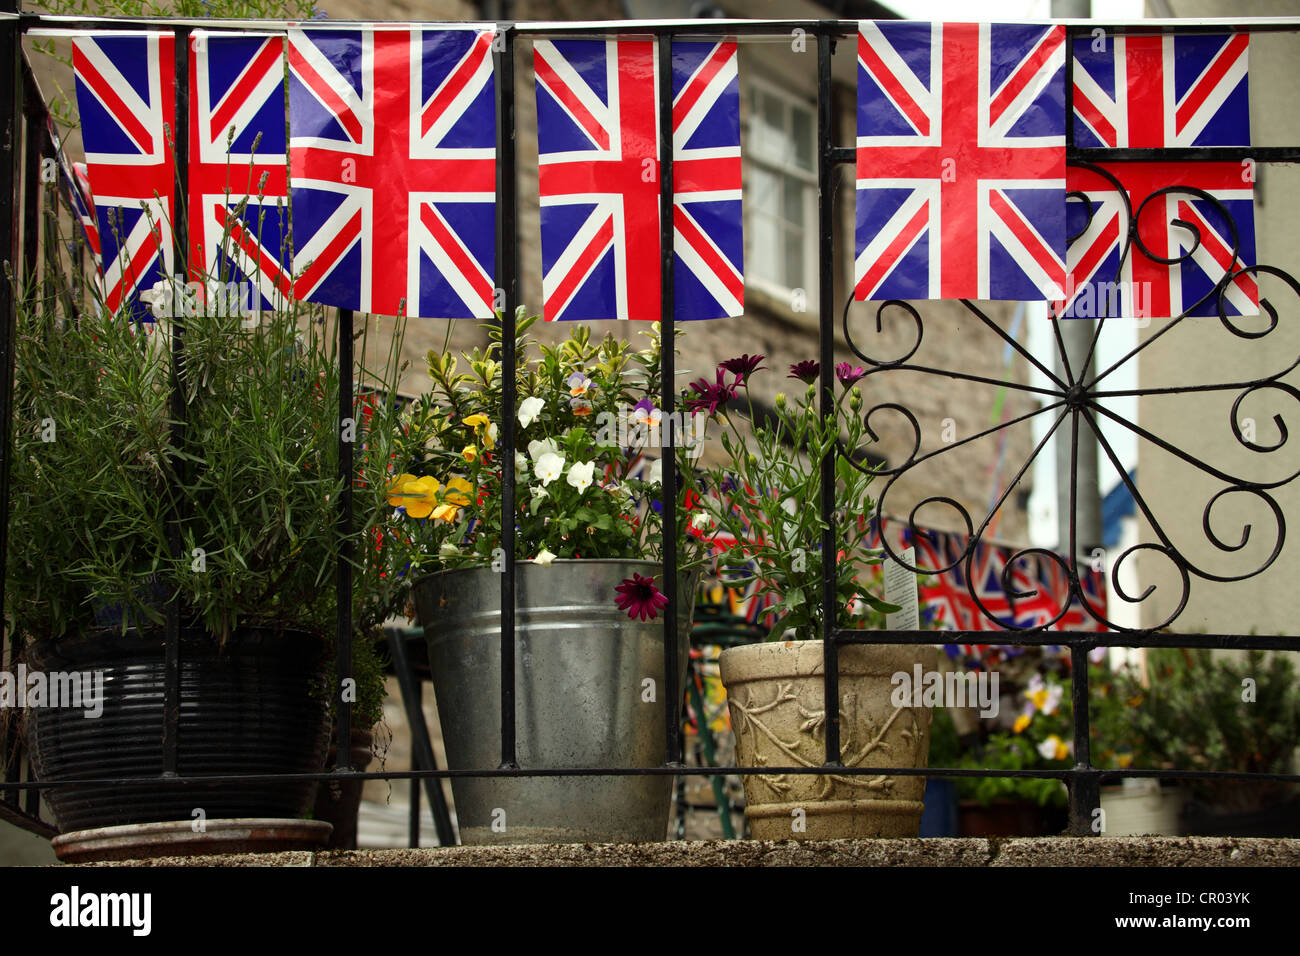 Union Flaggen auf dem Display in einer städtischen Gartenanlage. Dies war die Königin Diamond Jubilee Celebration übernommen. Stockfoto